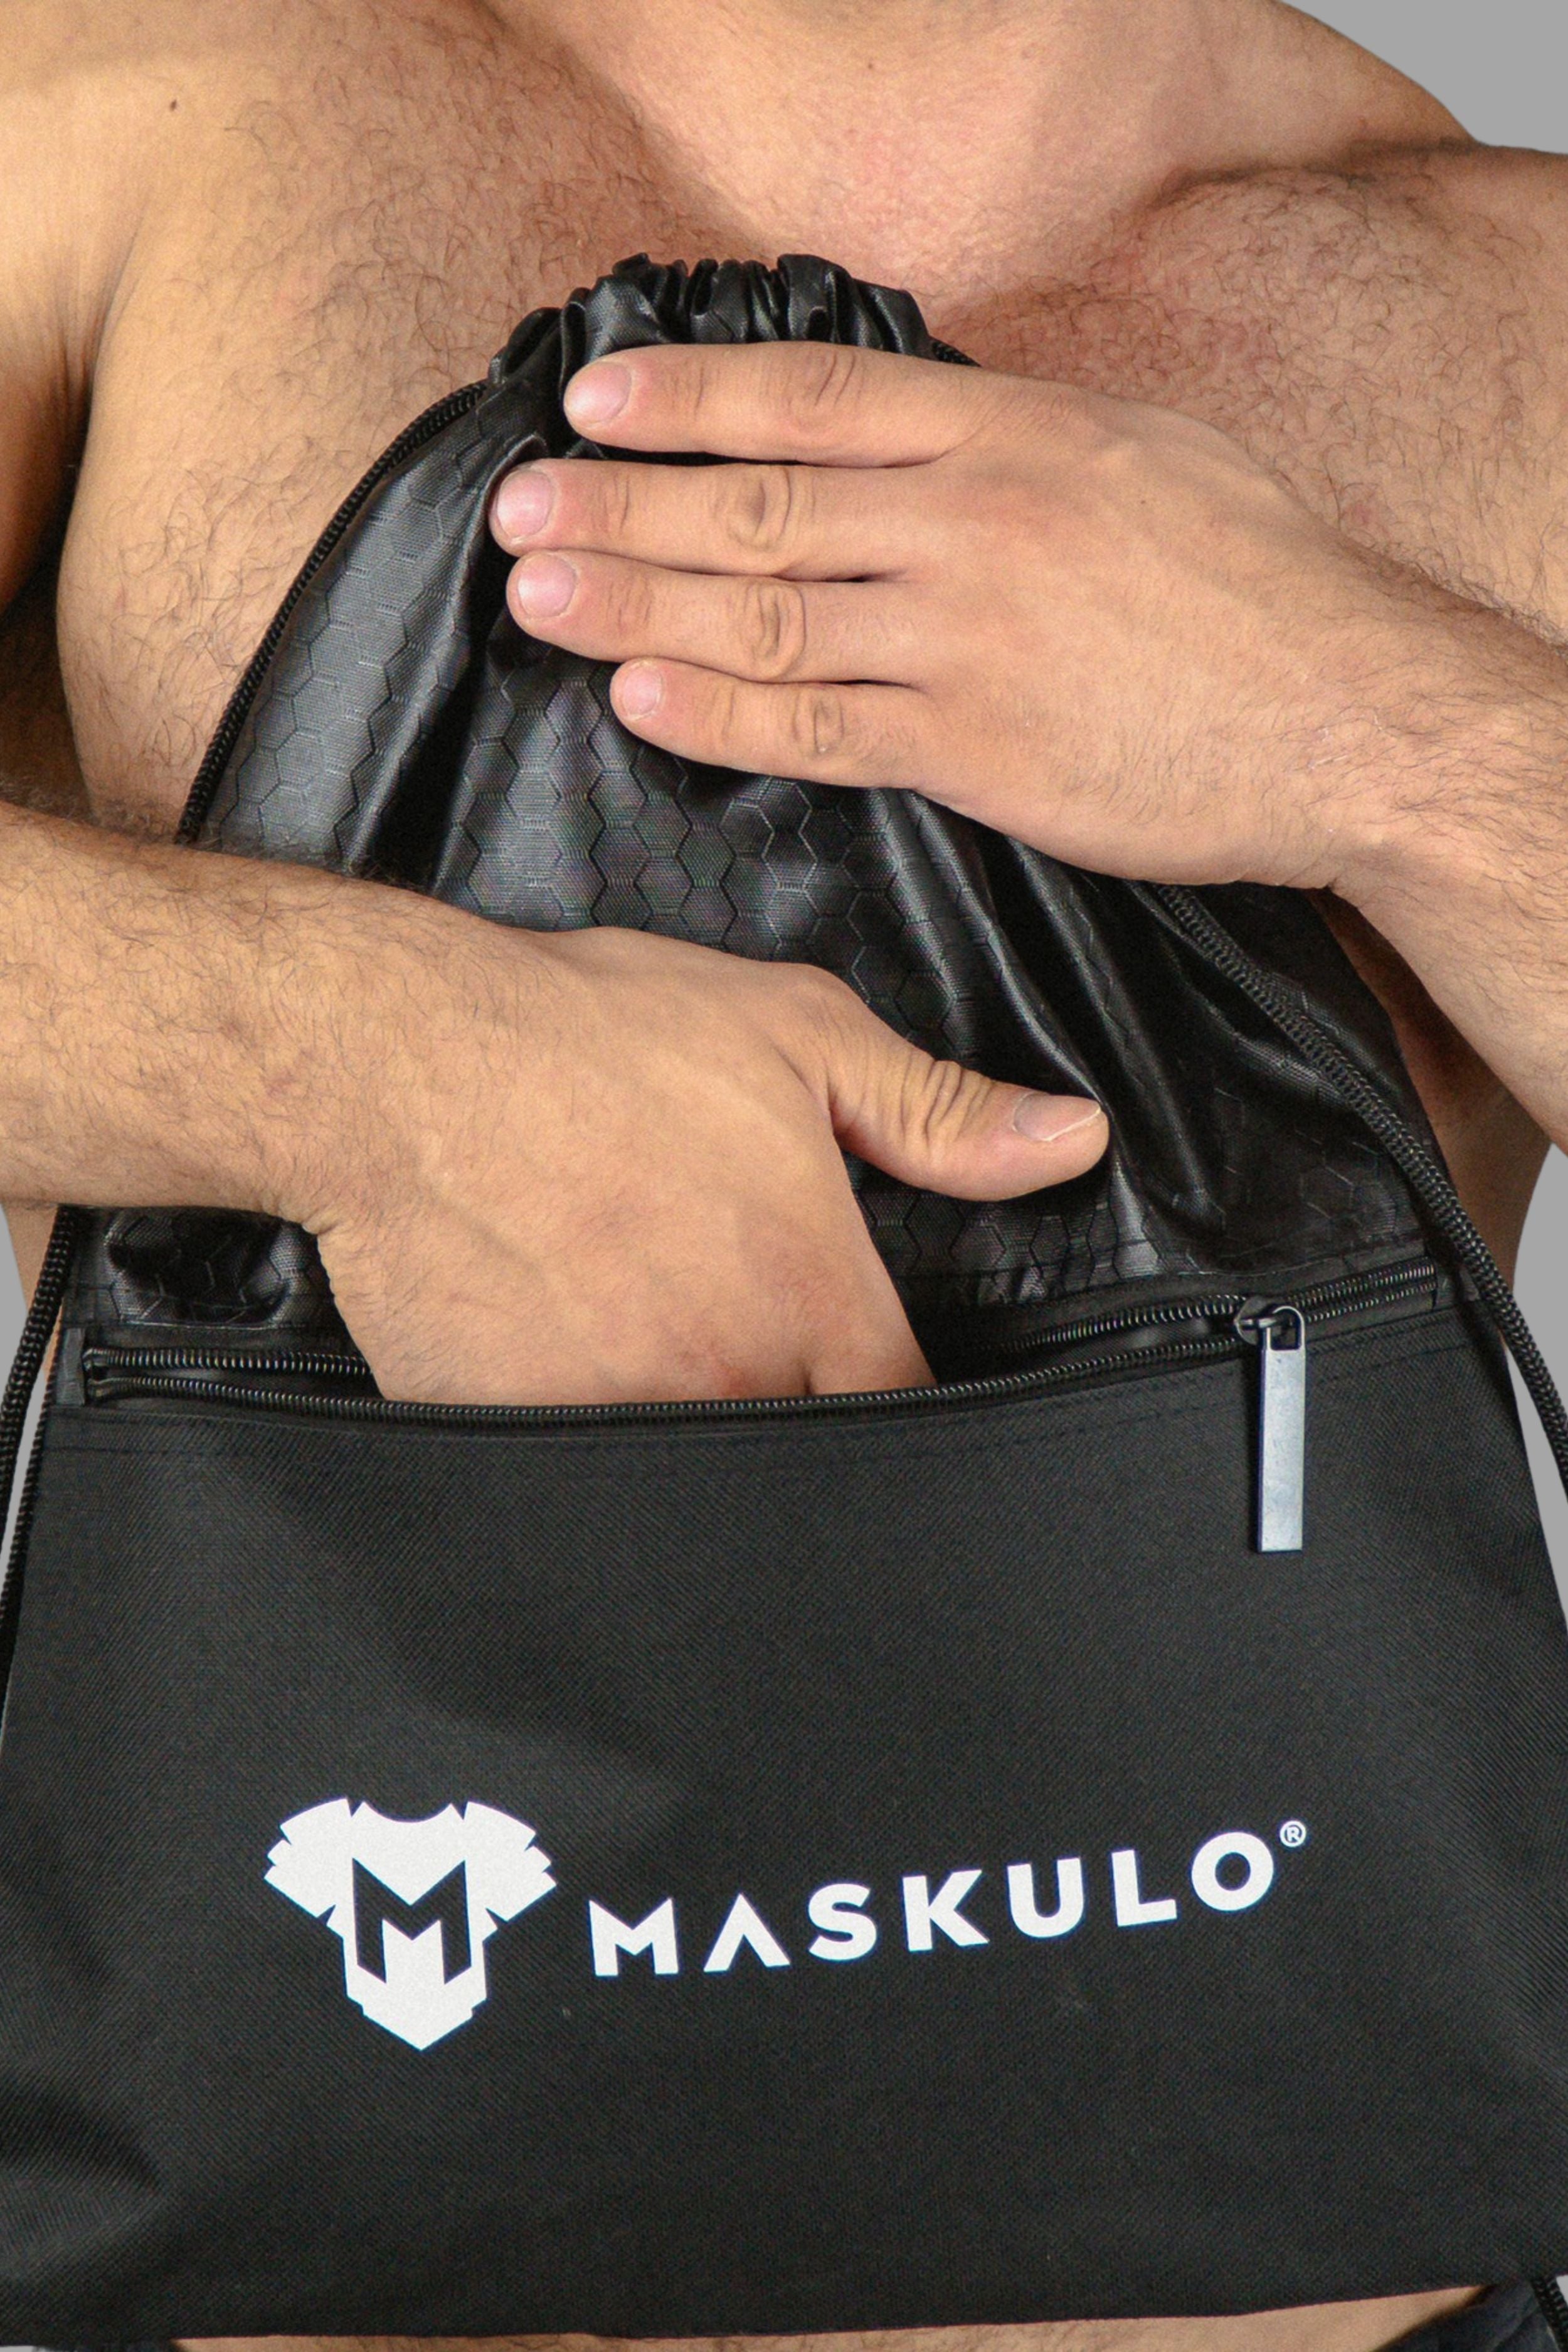 Maskulo Drawstring Bag